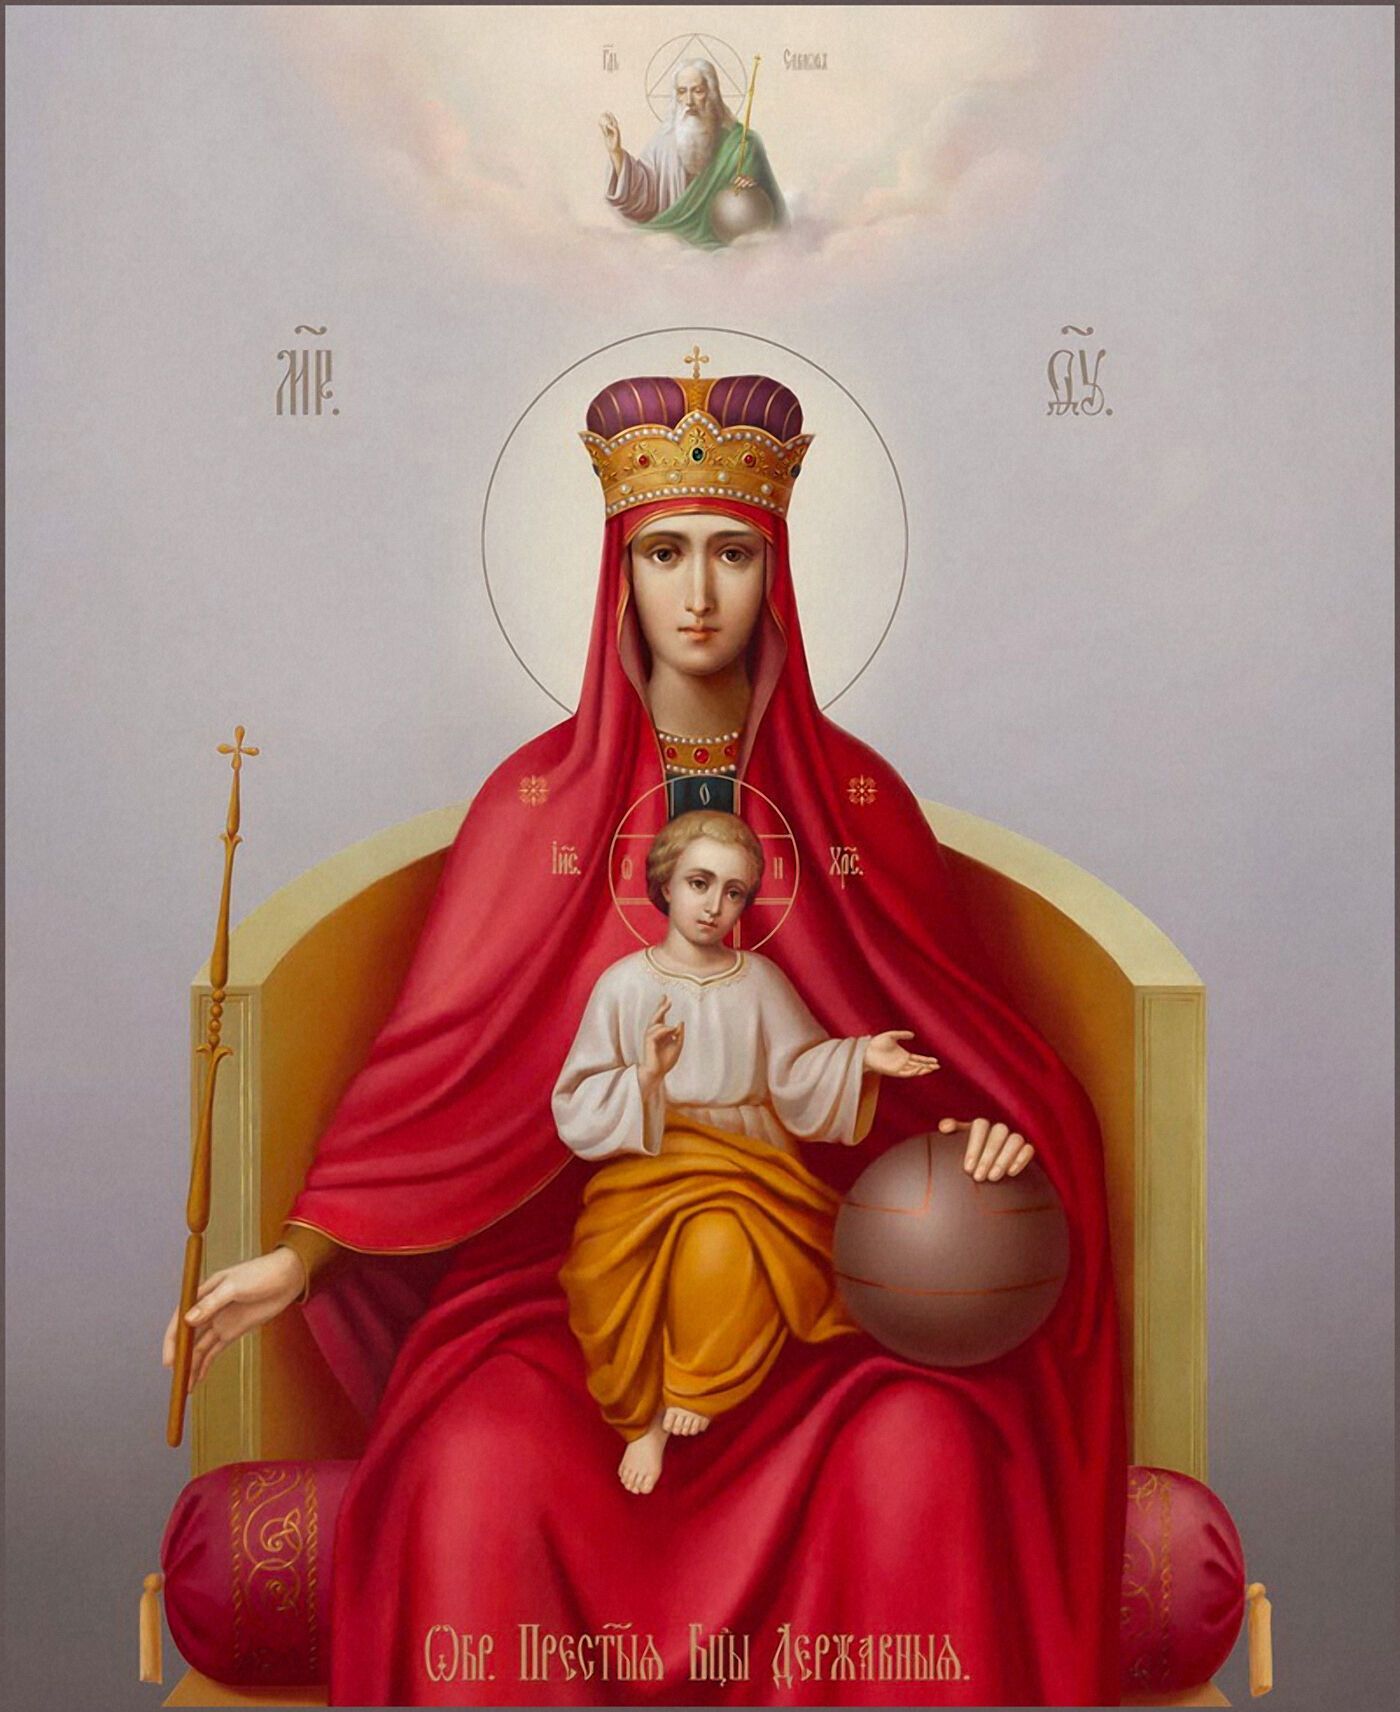 Ікону Божої Матері "Державну" було набуто 15 березня 1917 року